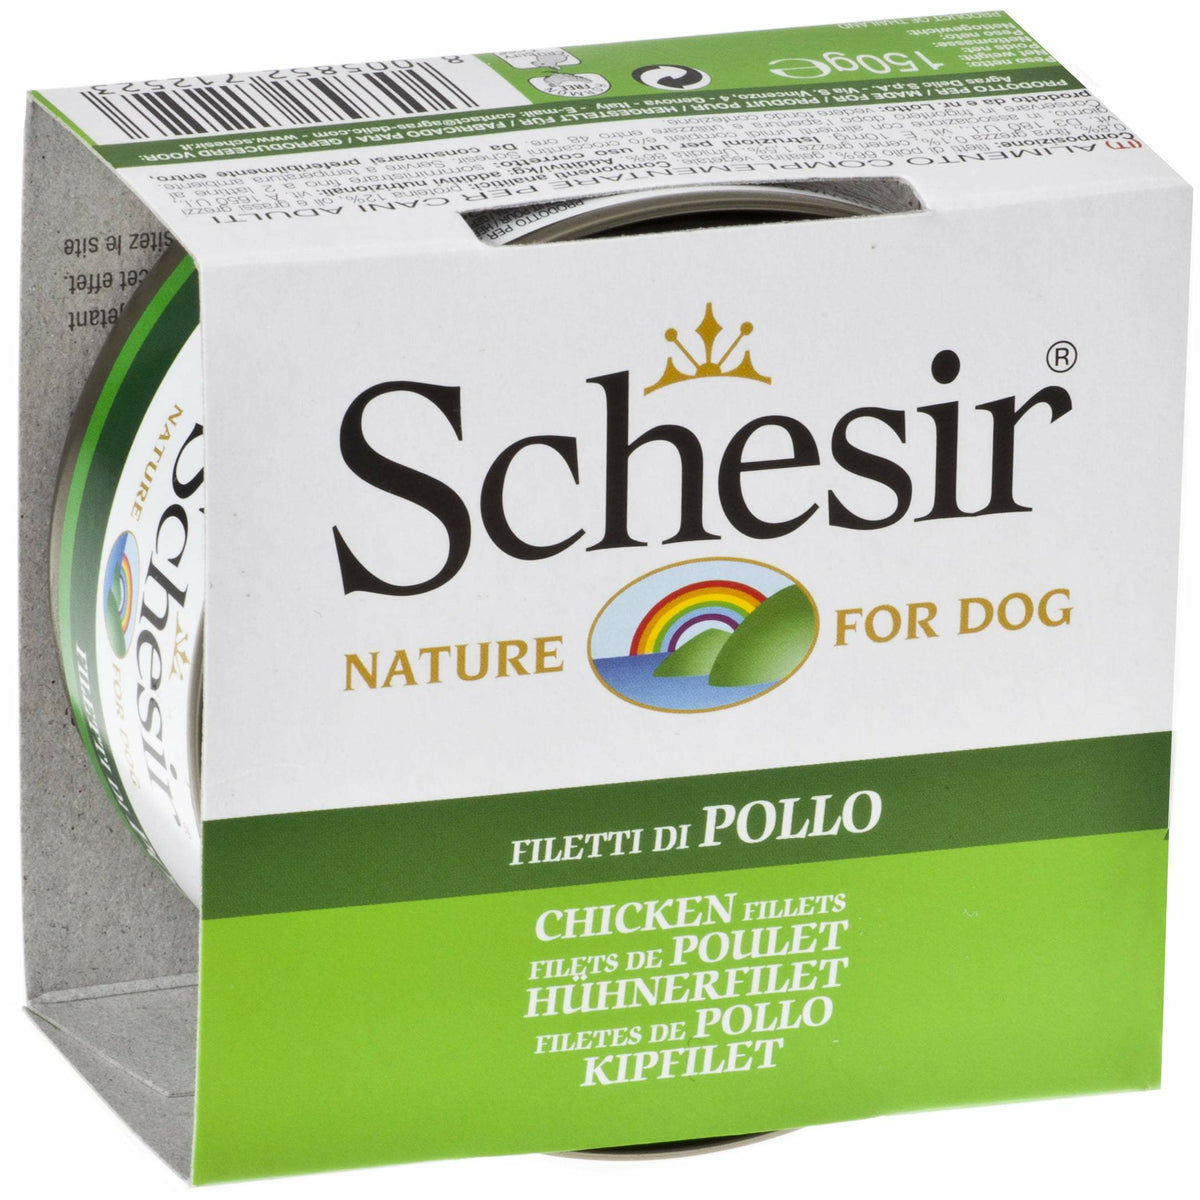 Schesir Chicken Fillets (150g) - Canned Dog Food